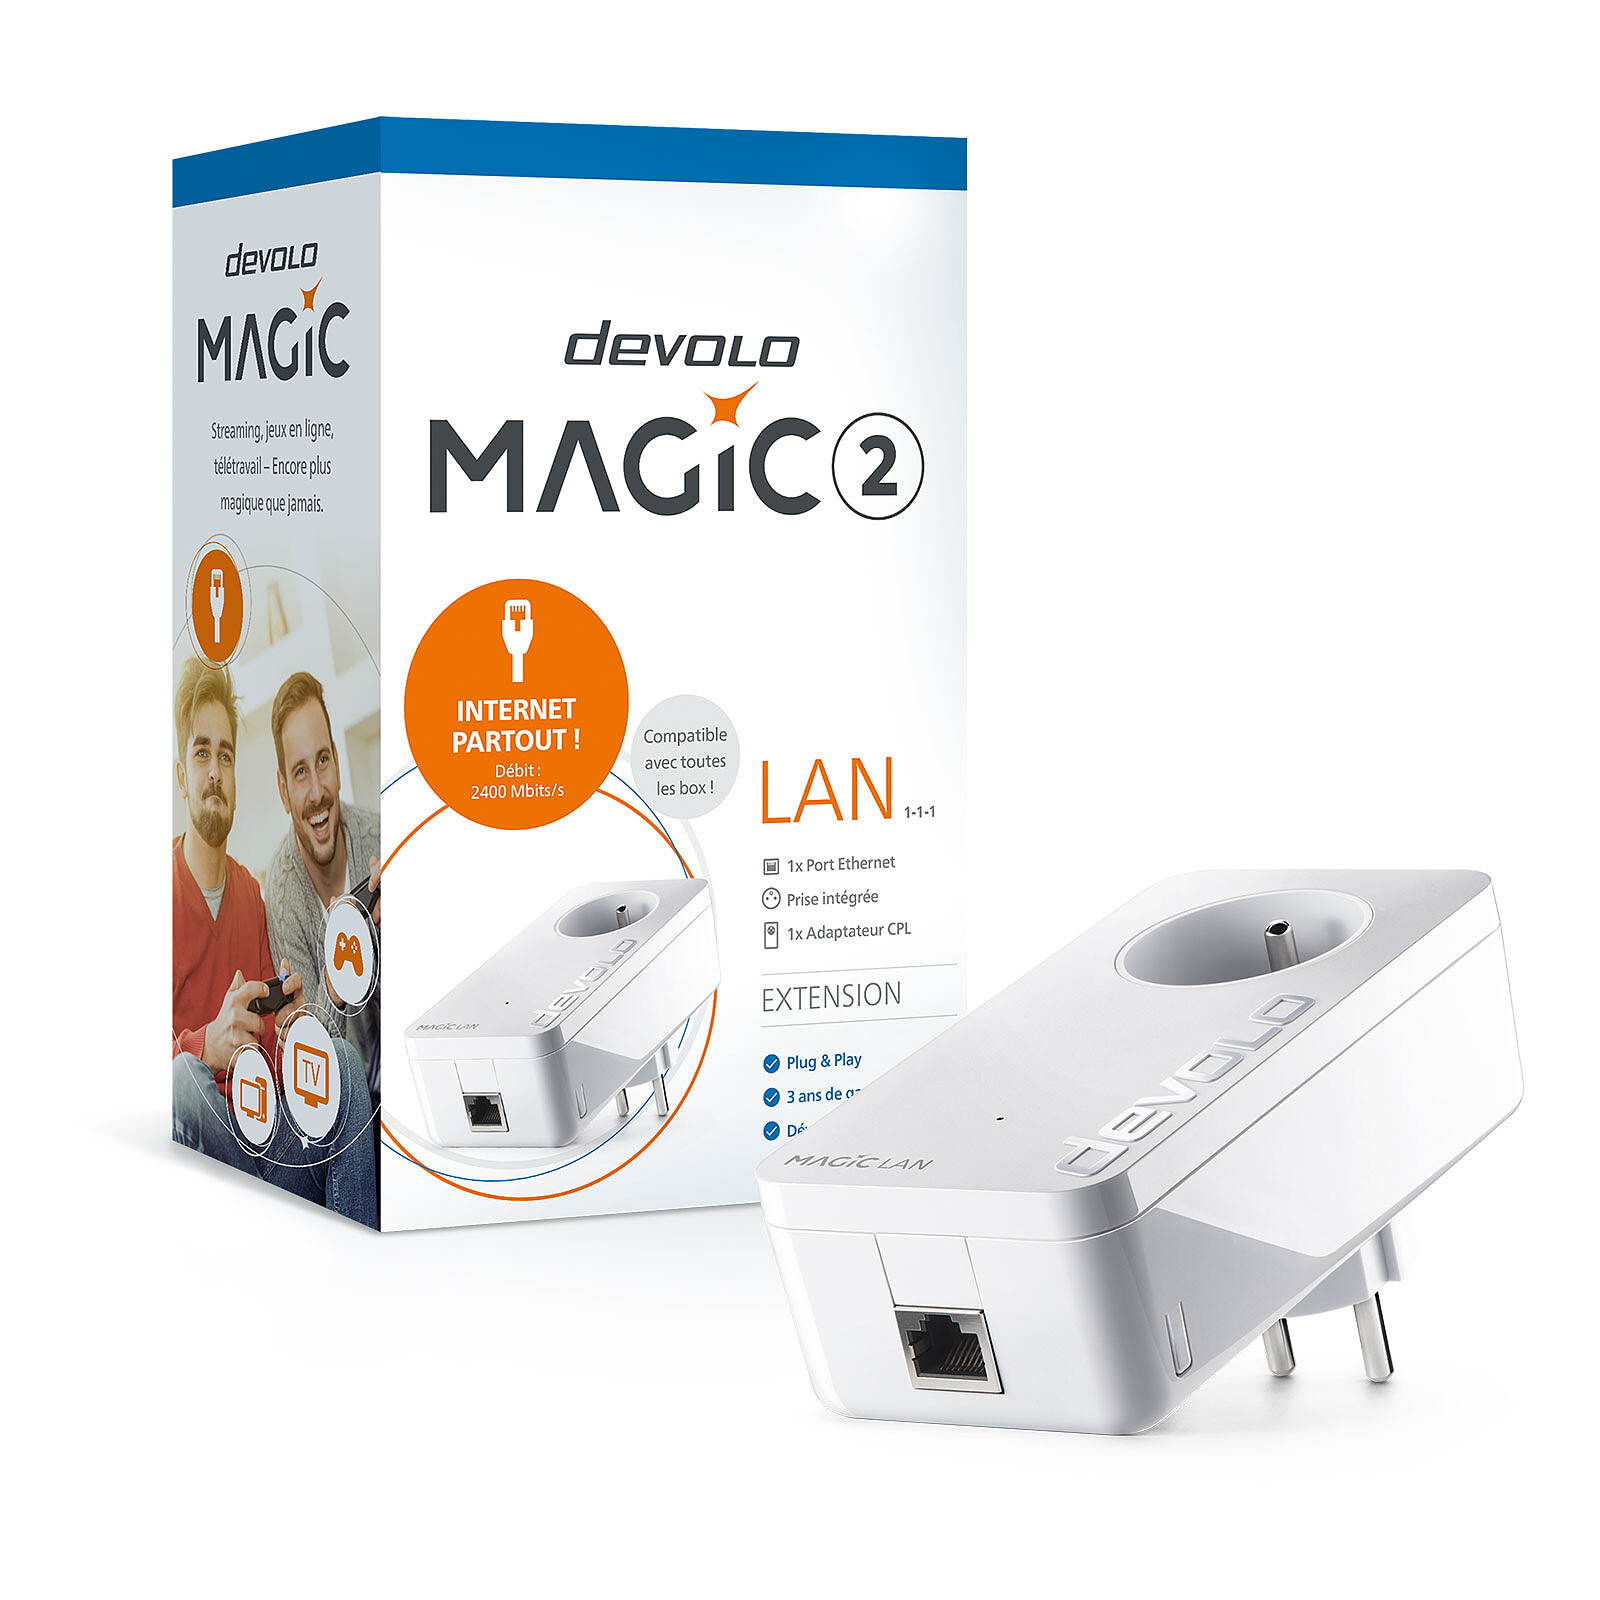 devolo Magic 2 LAN - Powerline adapter - LDLC 3-year warranty